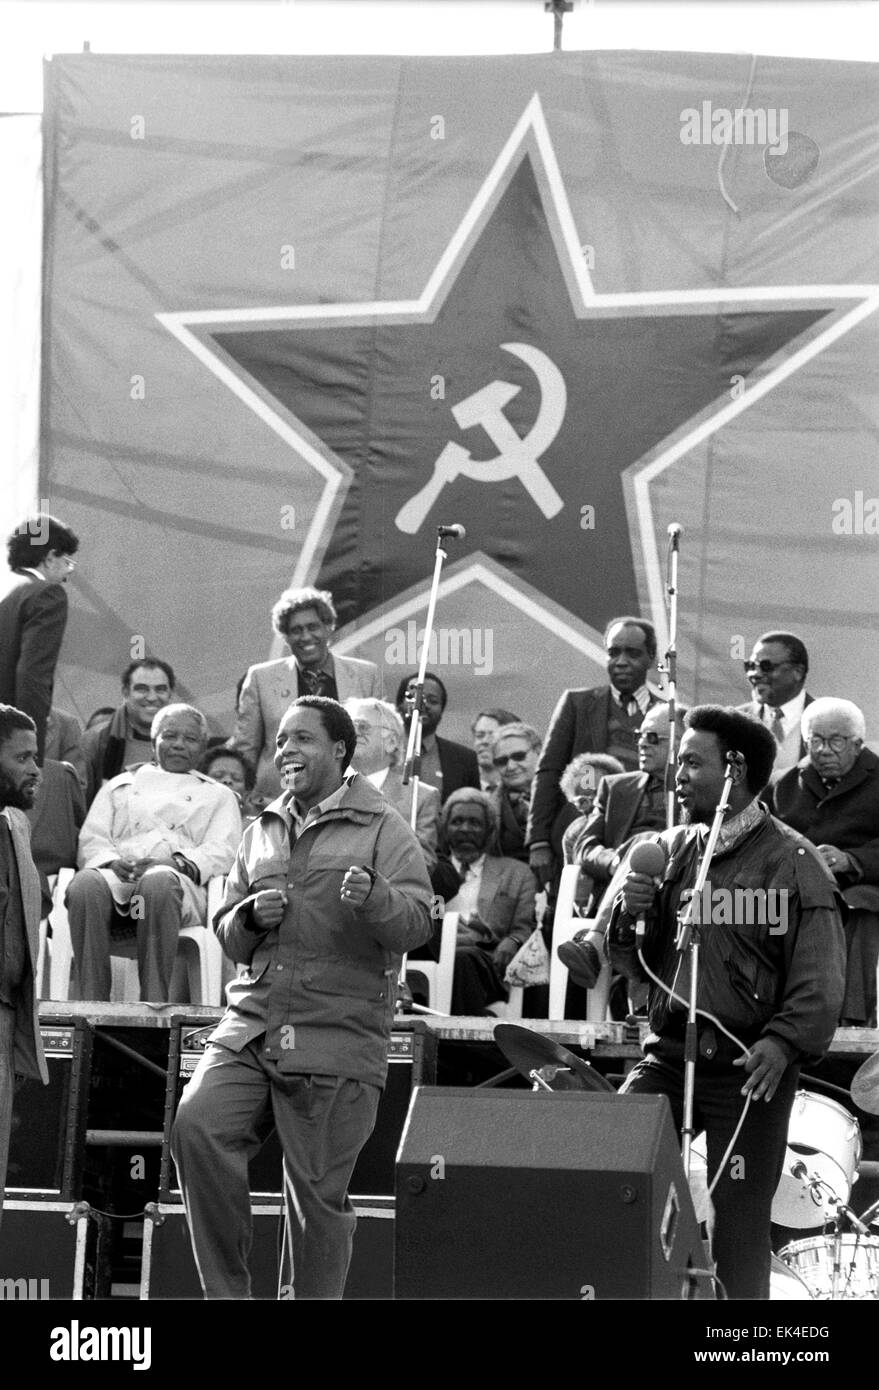 Chris Hani danze al lancio del SACP , Soweto, 29.07.1990. Mandela( sinistra in camice bianco) orologi da dietro.( centro Ray Alexander Simons con occhiali da sole), destra Walter Sisulu. ( Peter Mokaba allora leader dell'ANC la gioventù di destra con il microfono) Foto Stock